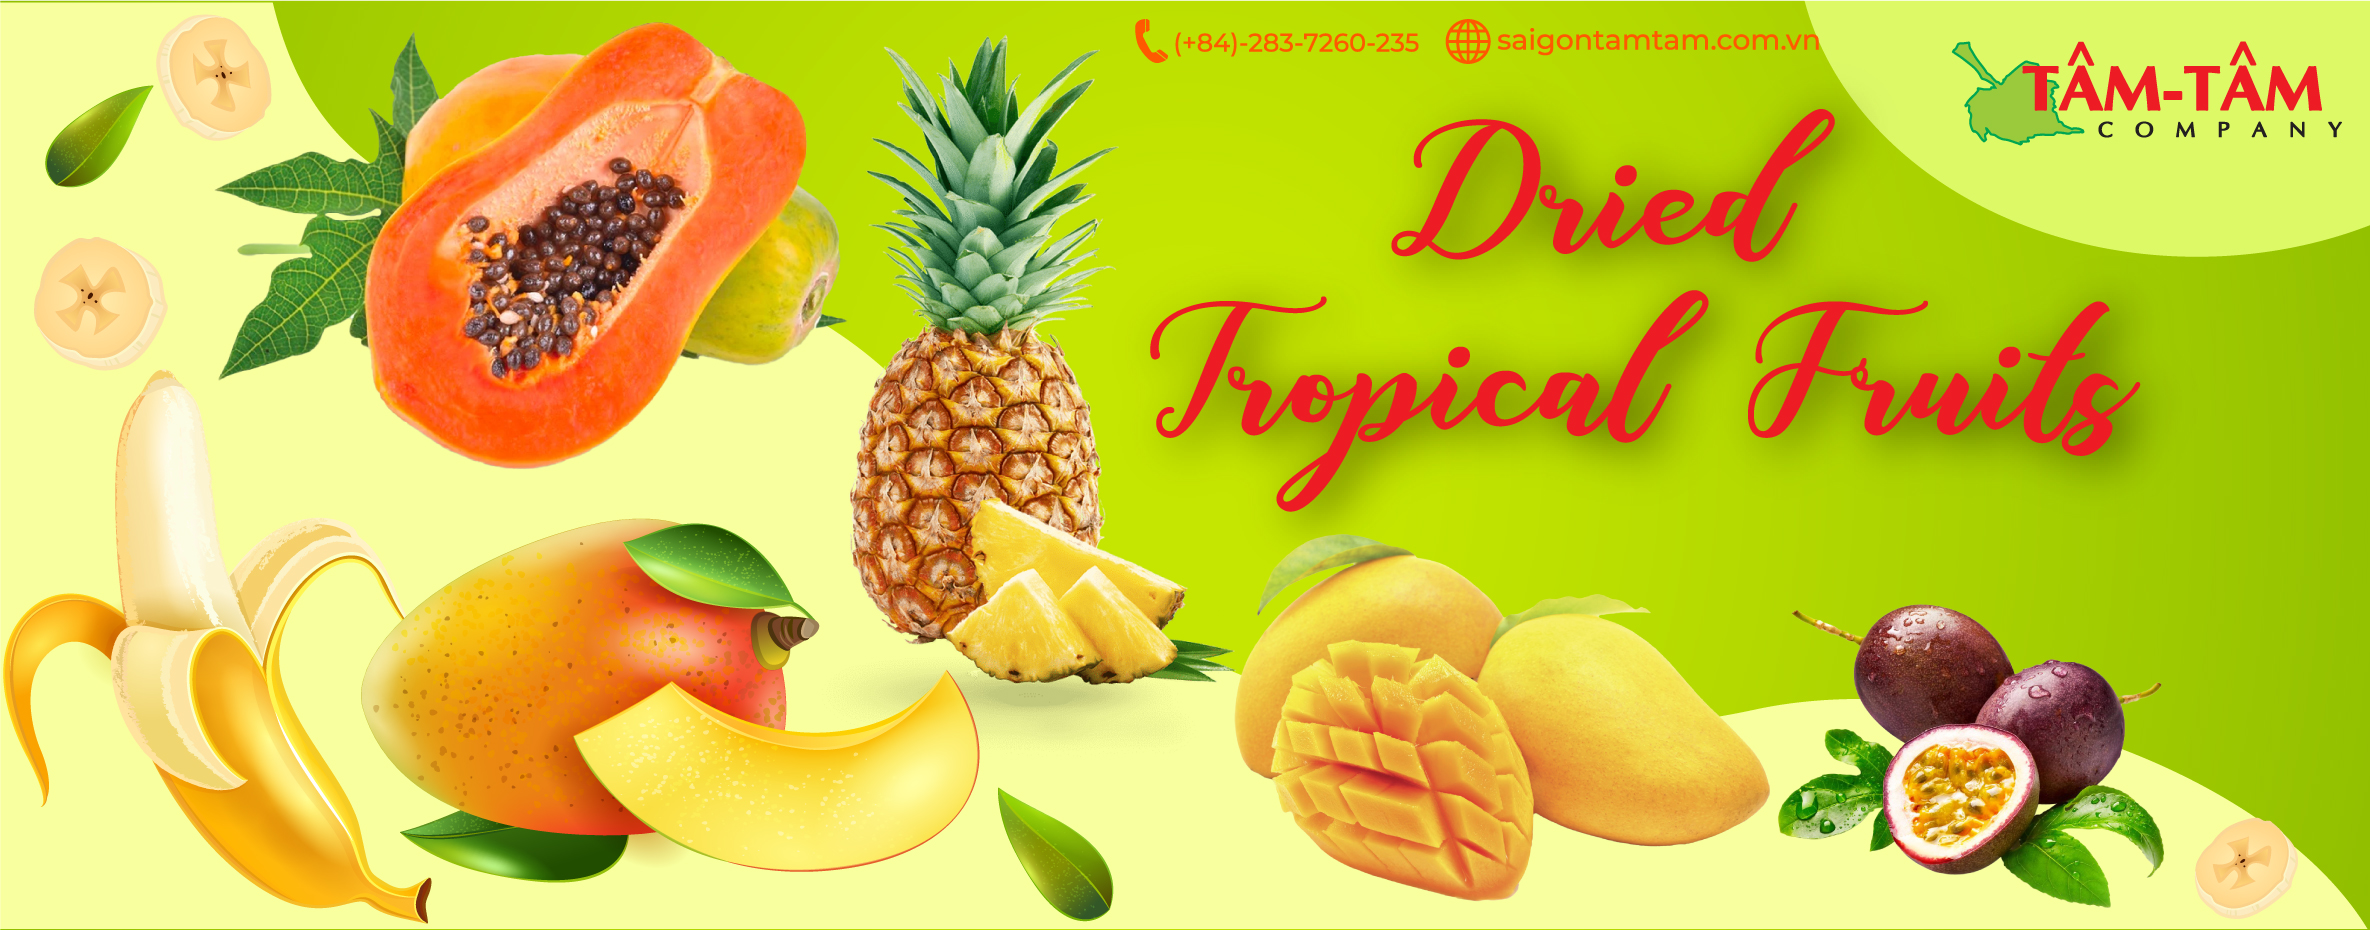 banner-Dried-tropical-fruits-sai-gon-tam-tam